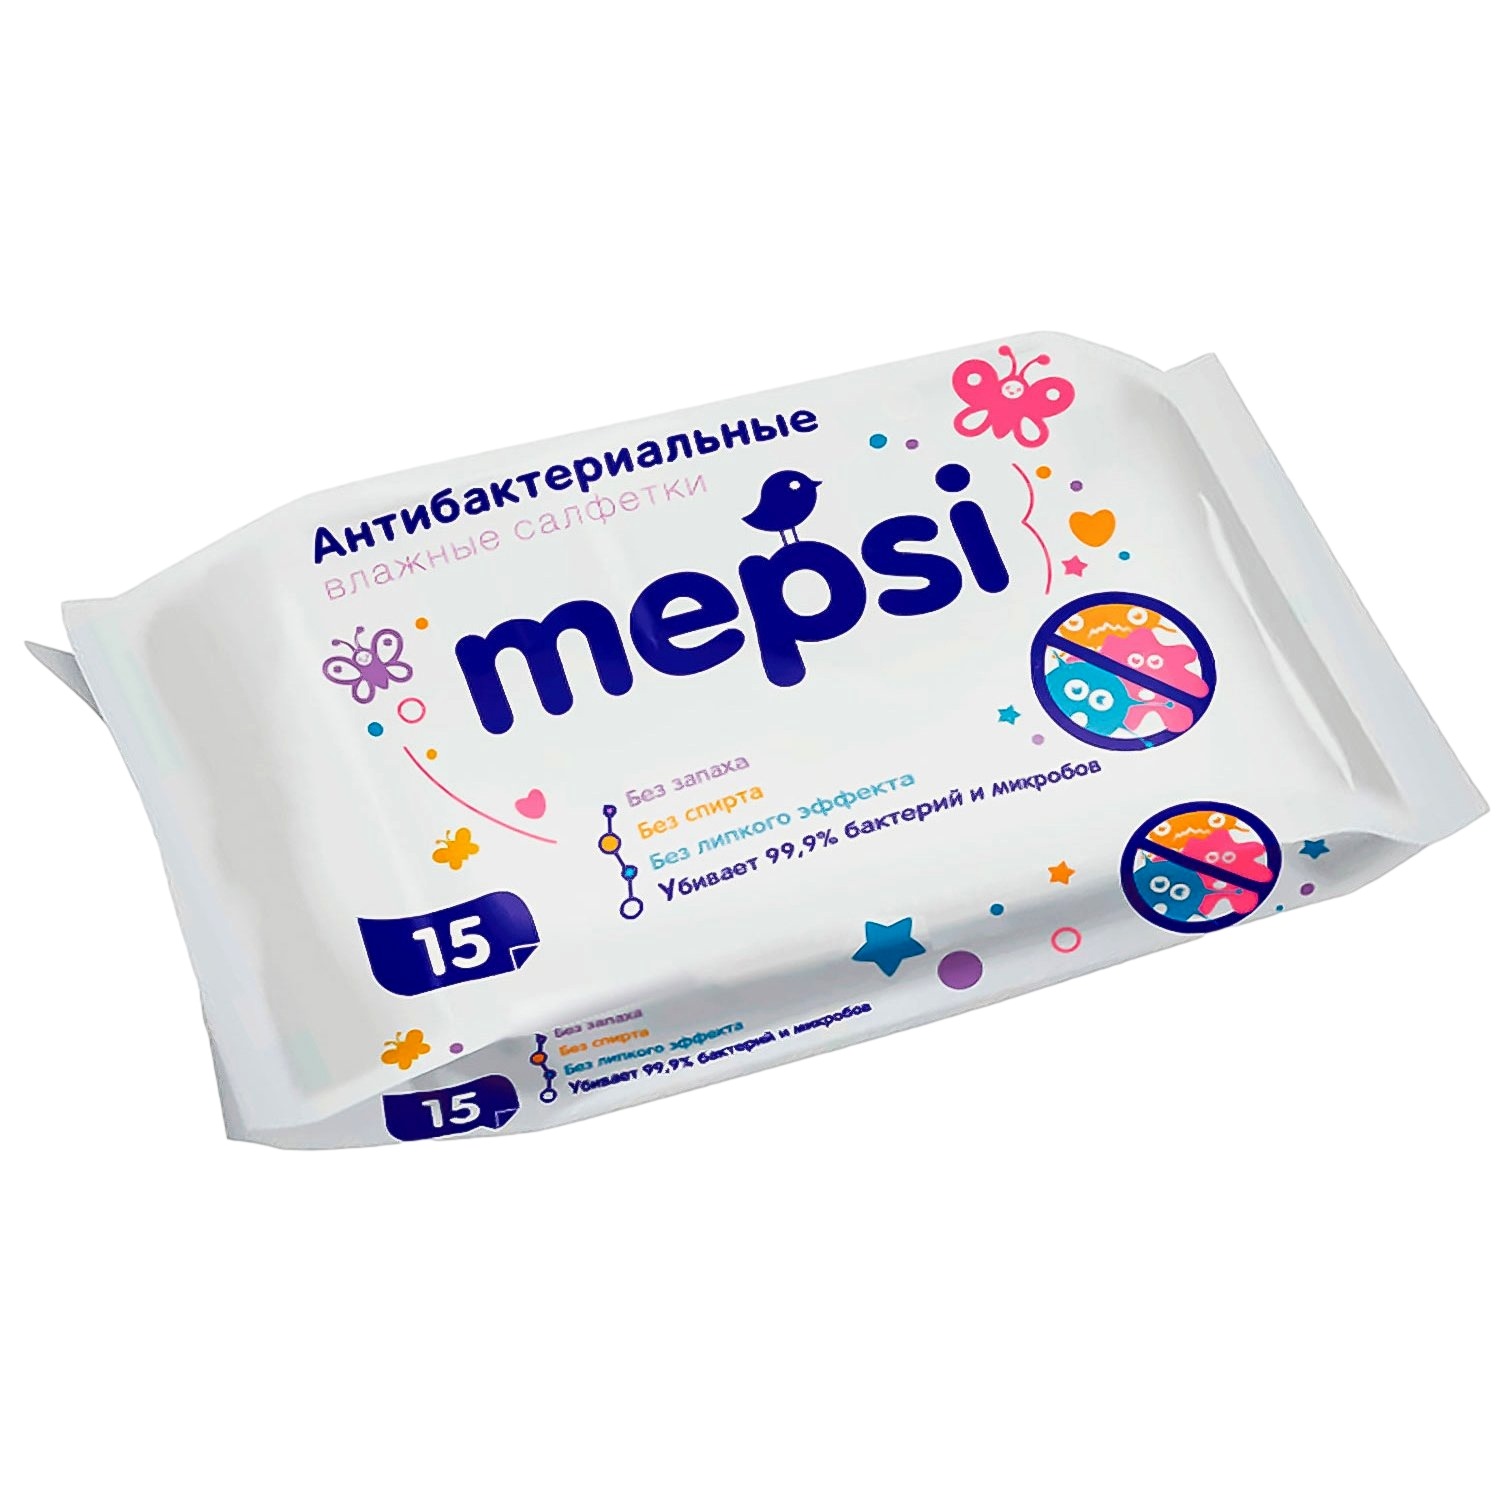 Влажные салфетки "Мепси" антибактериальные очищающие (15 шт)